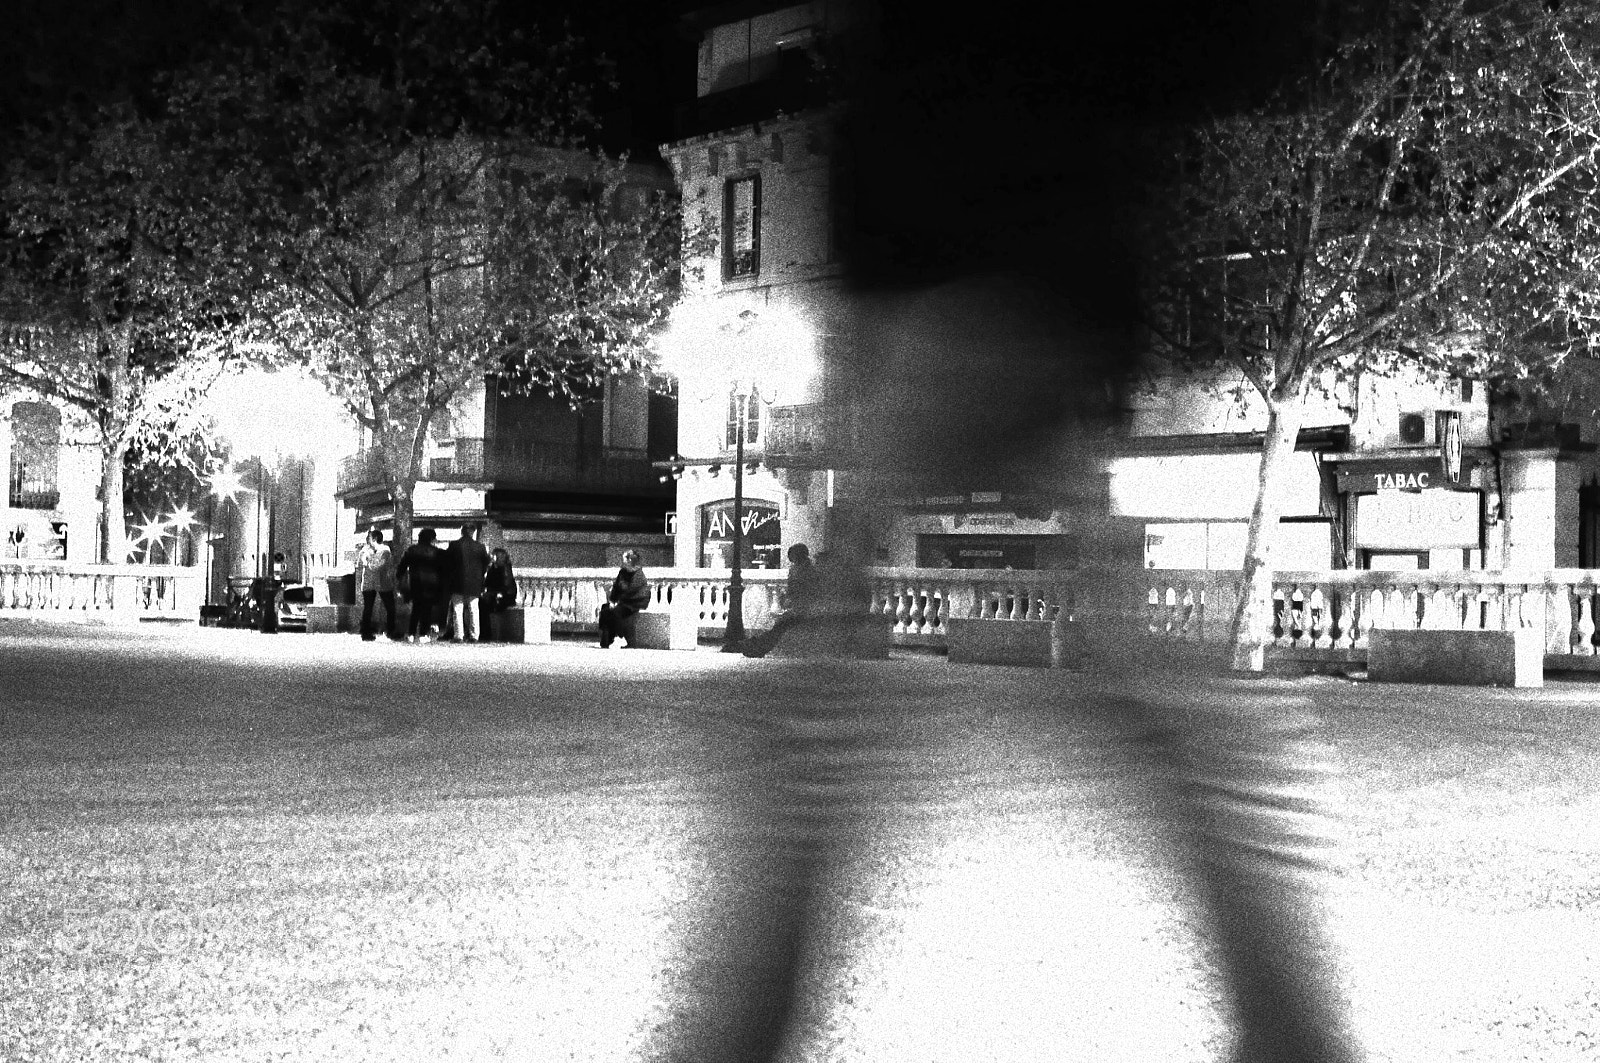 Nikon D300S sample photo. Nuit debout, 40 mars, alès photography